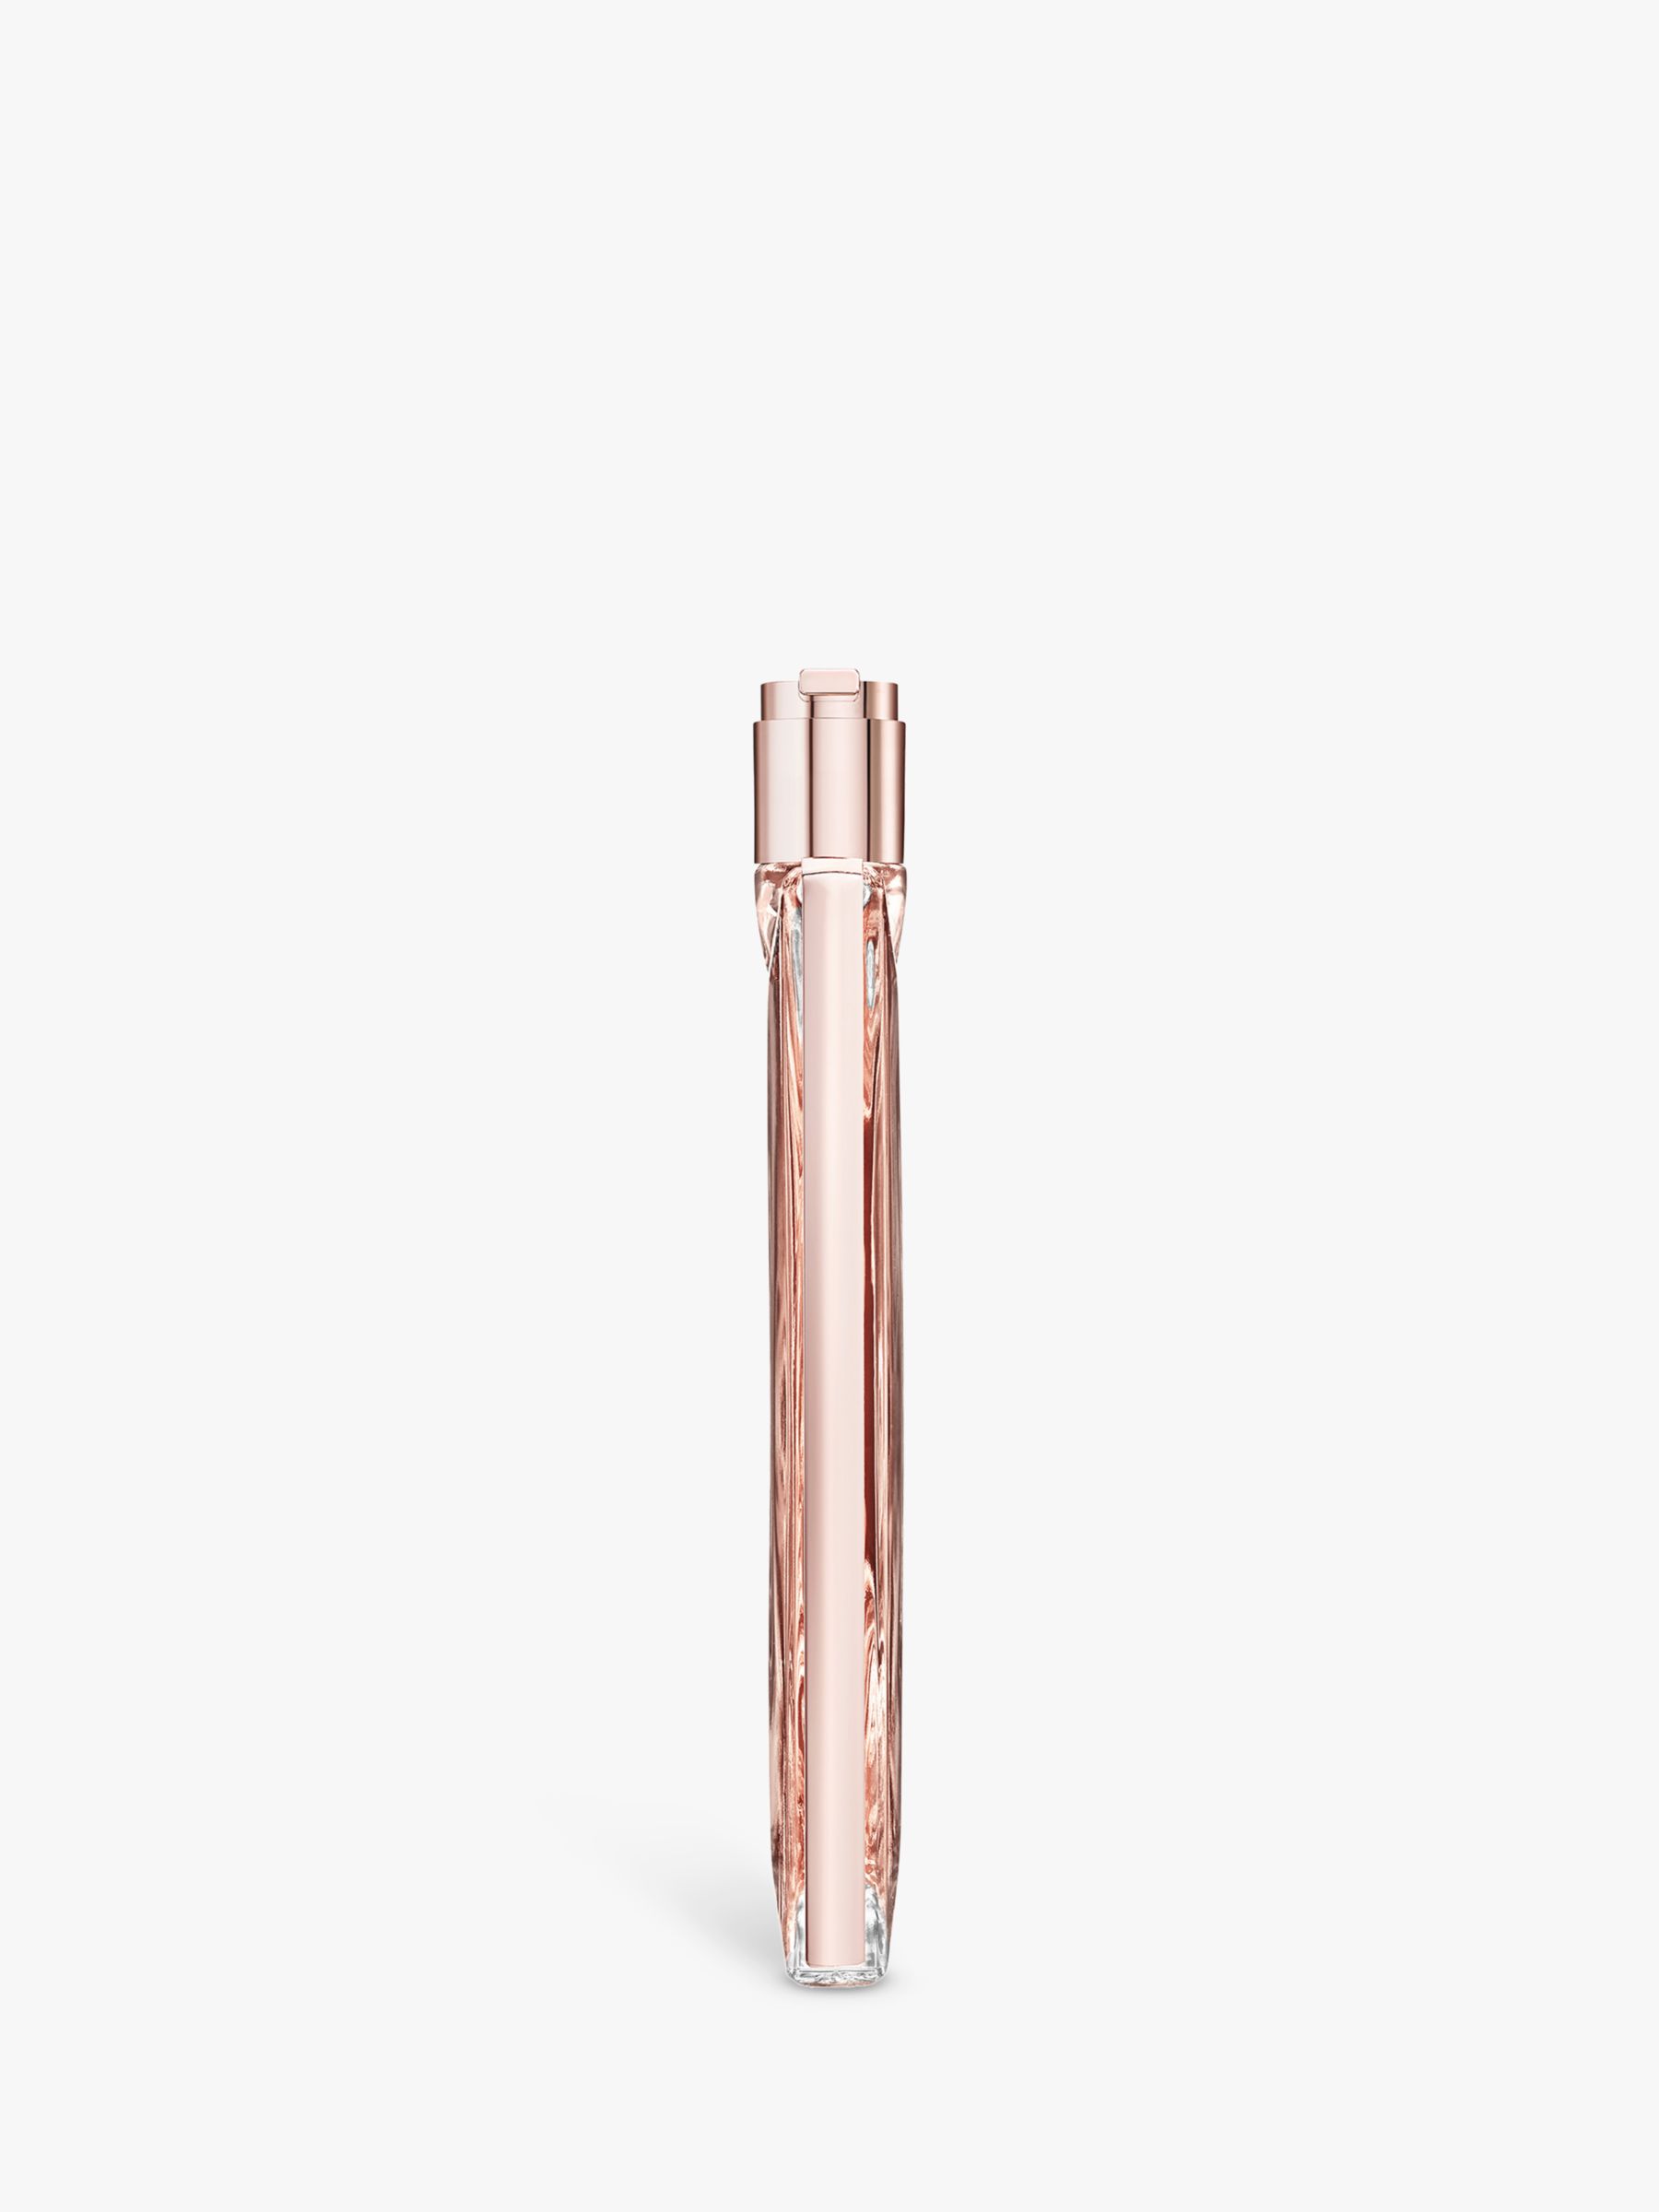 Lancôme Idôle Eau de Parfum, 50ml